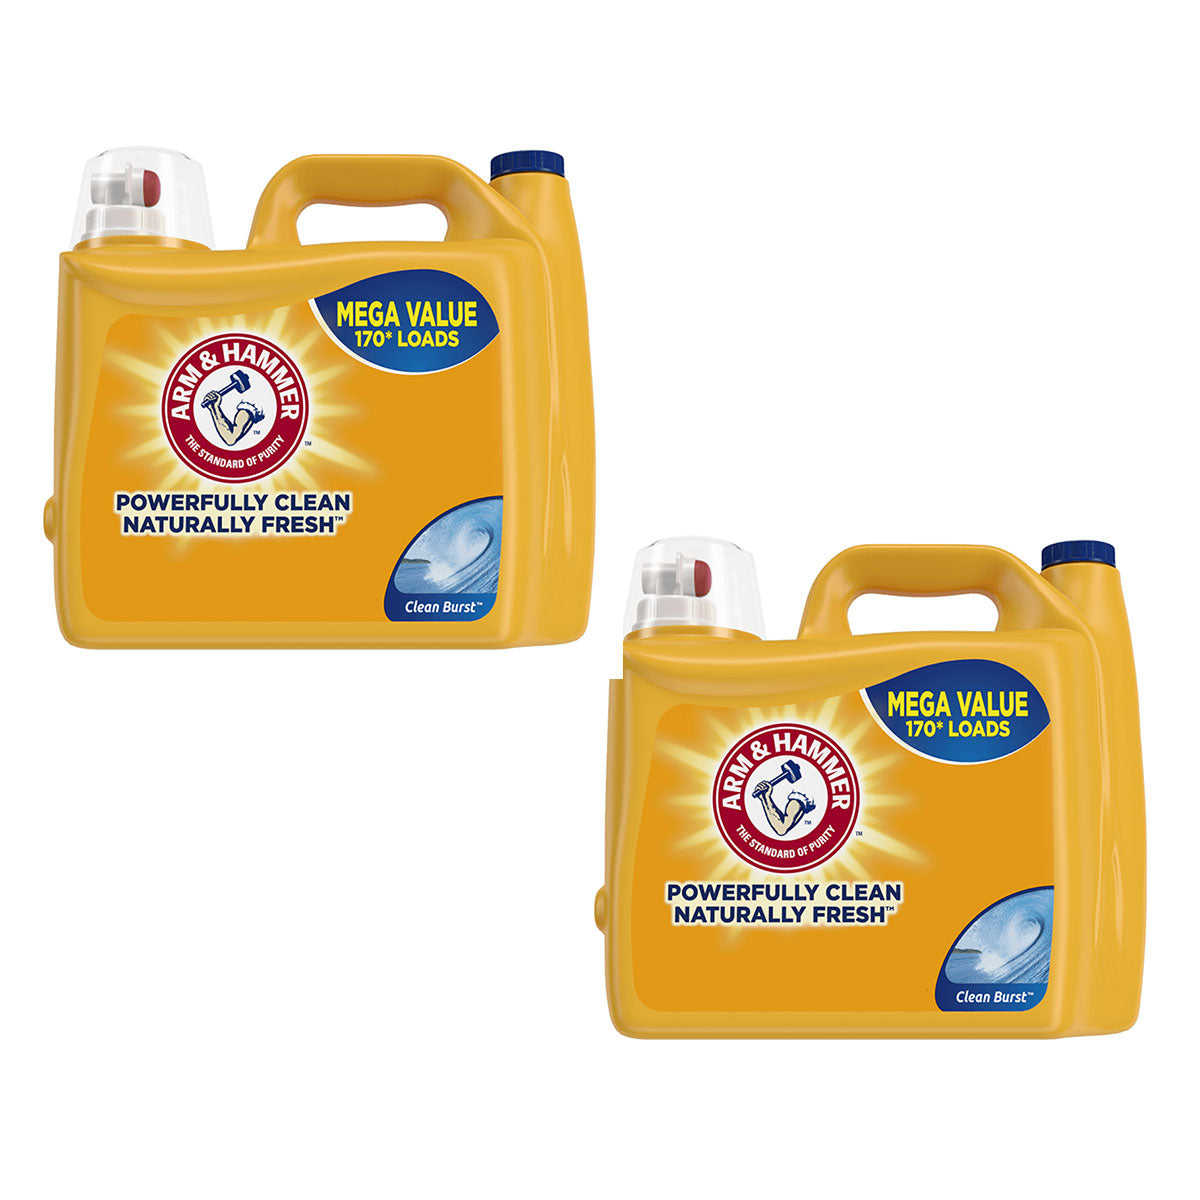 Pack Detergente líquido concentrado para ropa Arm & Hammer Clean Burst, Alta Eficiencia 5,03 litros (170 cargas) 2x $34.990